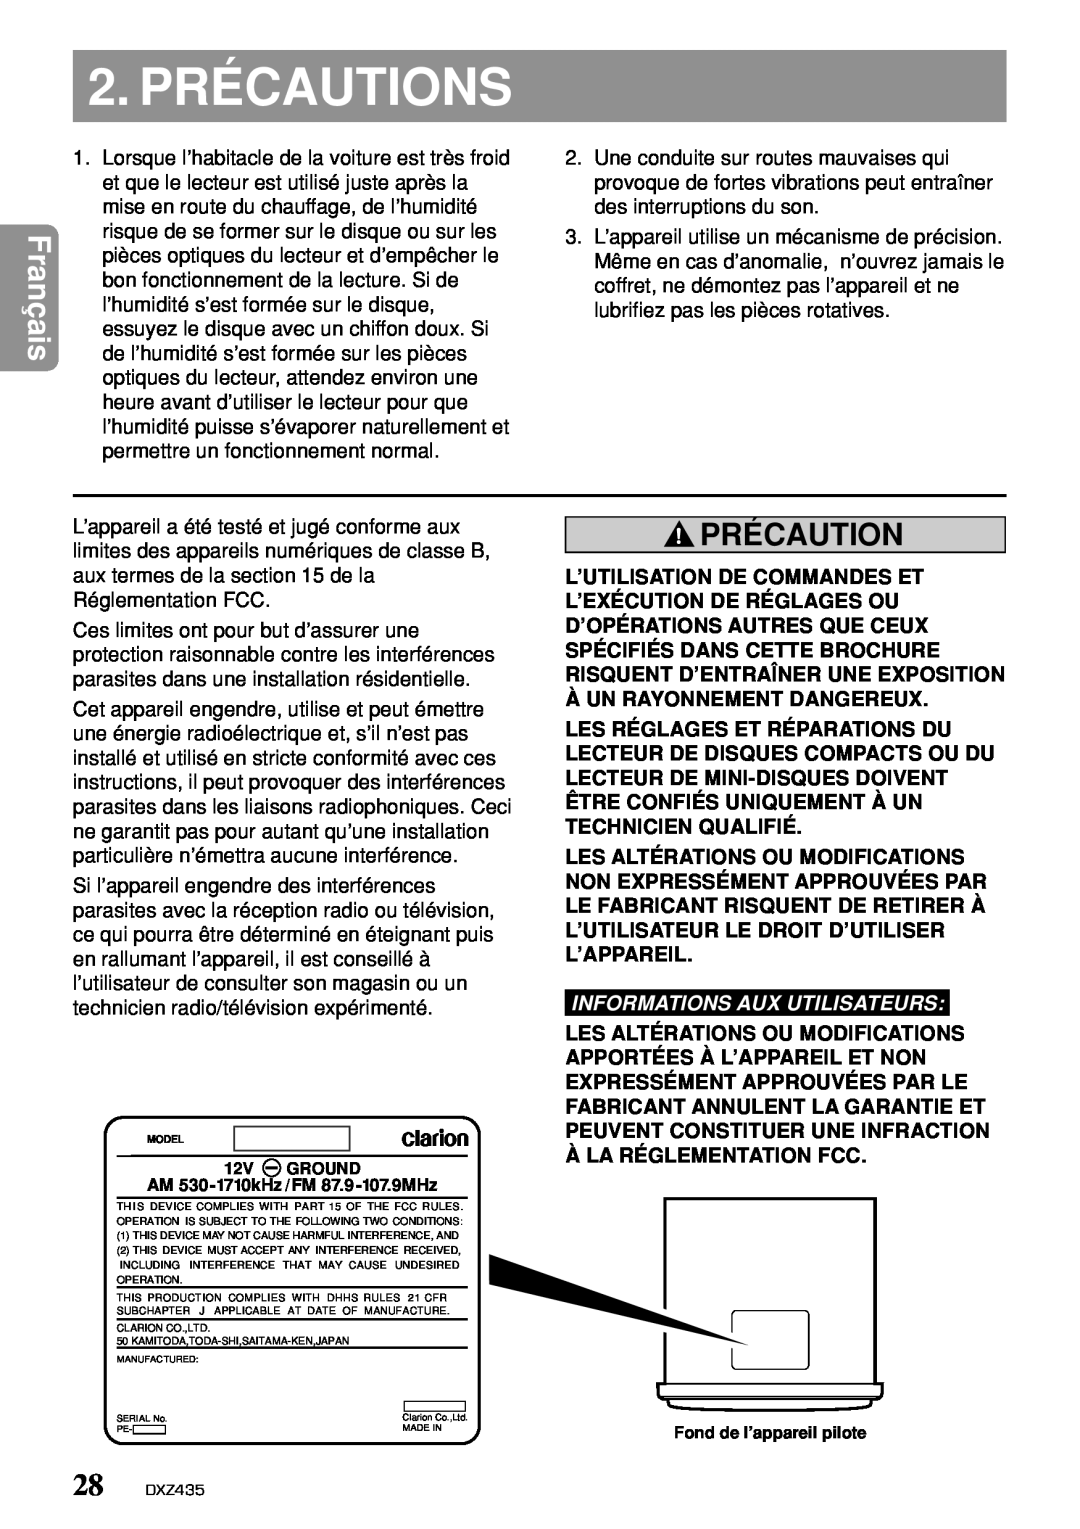 Clarion DXZ435 owner manual 2. PRÉCAUTIONS, Précaution, Informations Aux Utilisateurs 